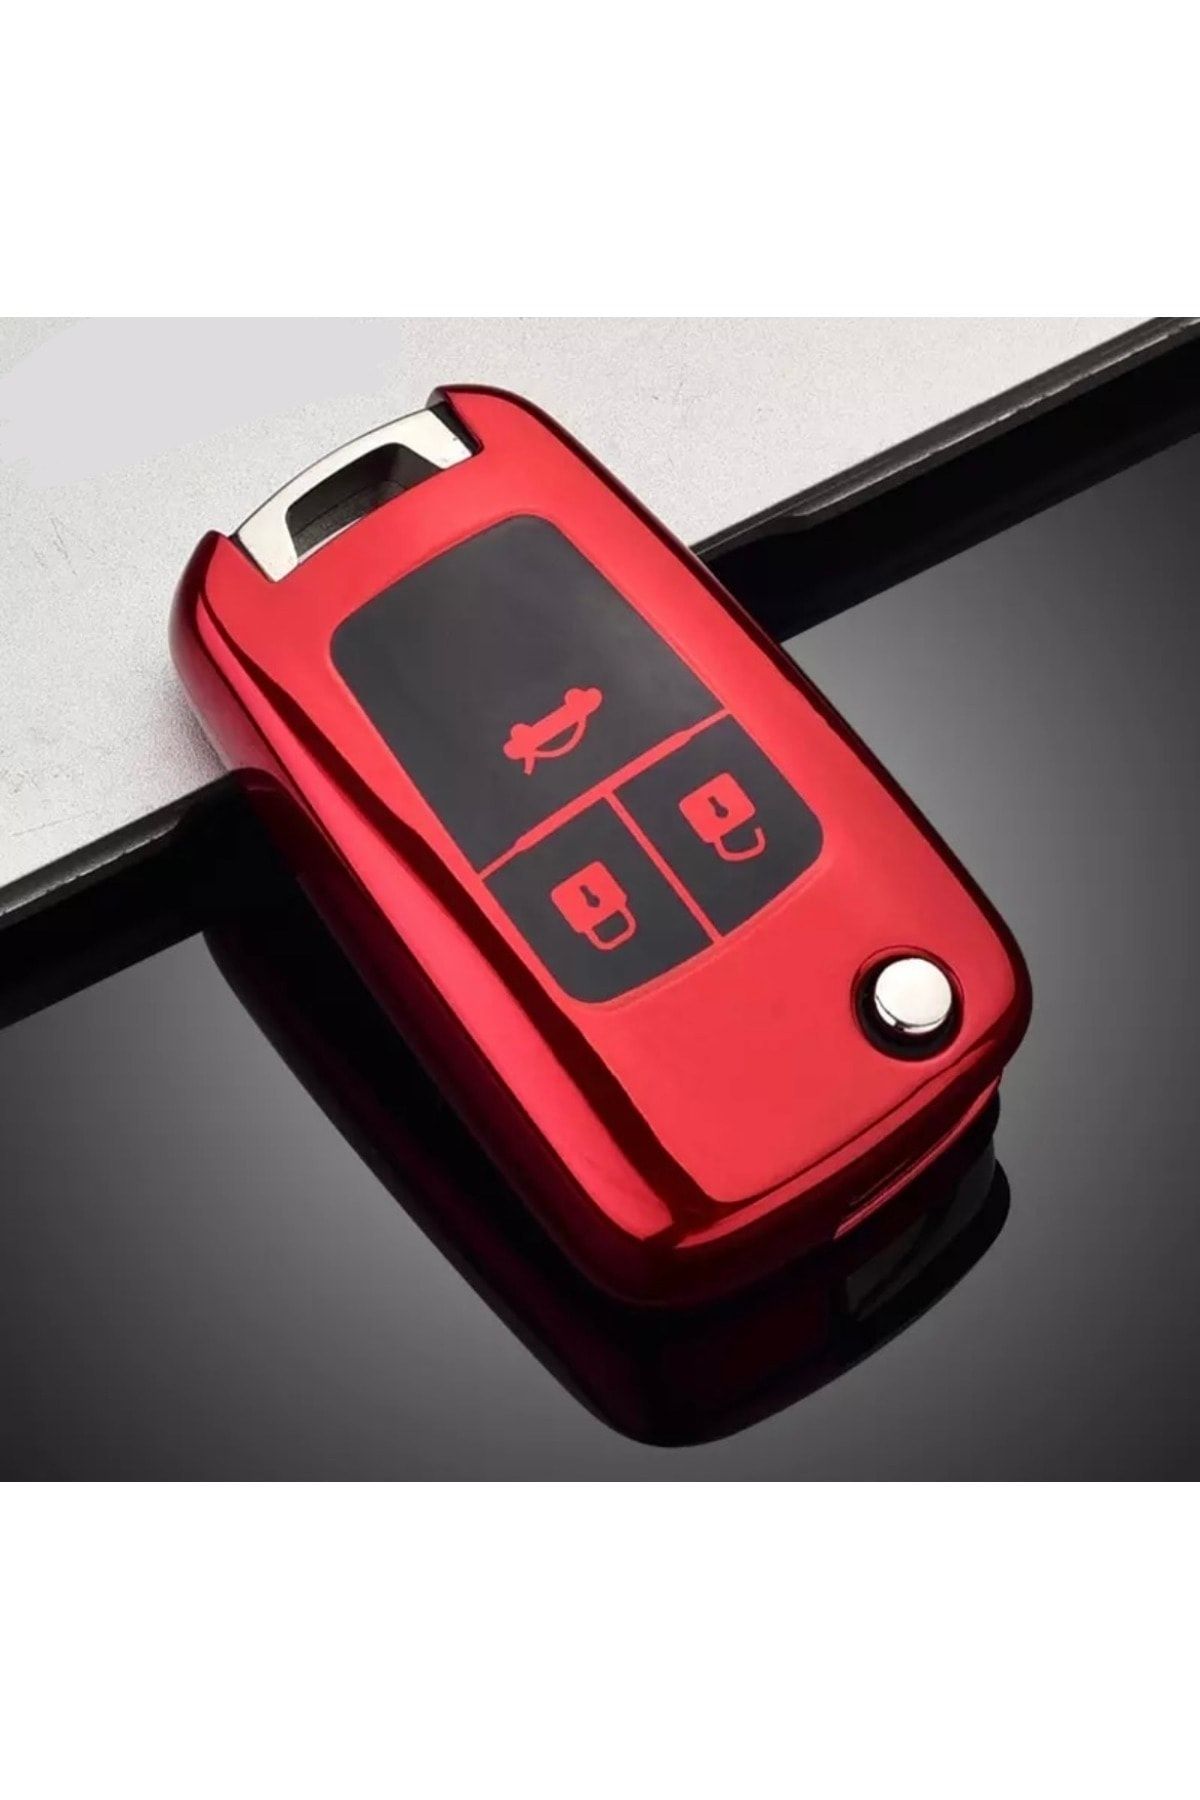 YıldızTuning Opel Mokka Luxury Key Case Red Color - Trendyol